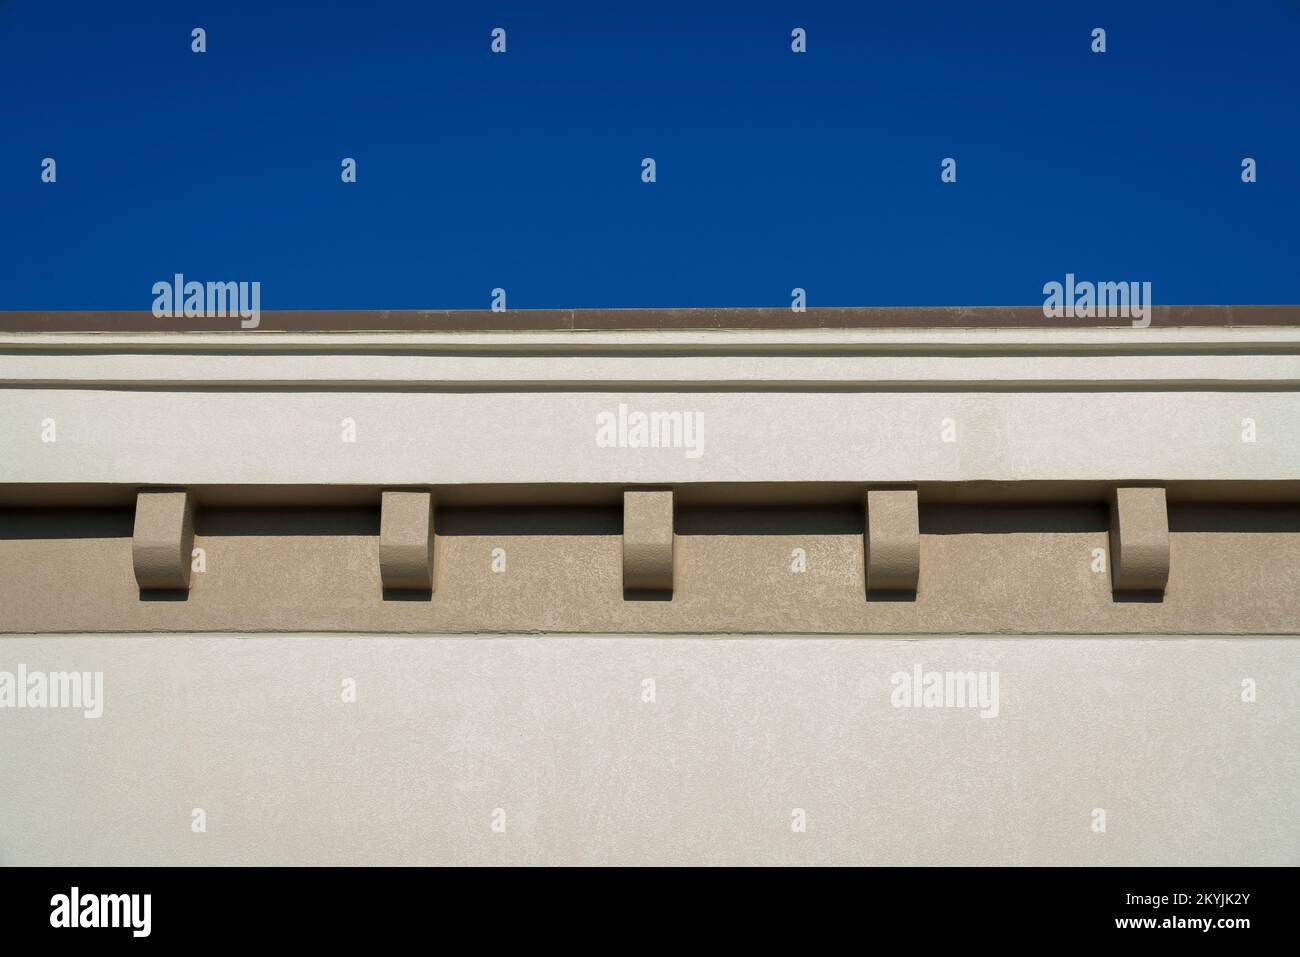 Dächer mit Zahnspuren aus der Nähe in Destin, Florida. Beigefarbenes Gebäude von außen in einem niedrigen Winkel mit Blick auf den klaren blauen Himmel oben. Stockfoto